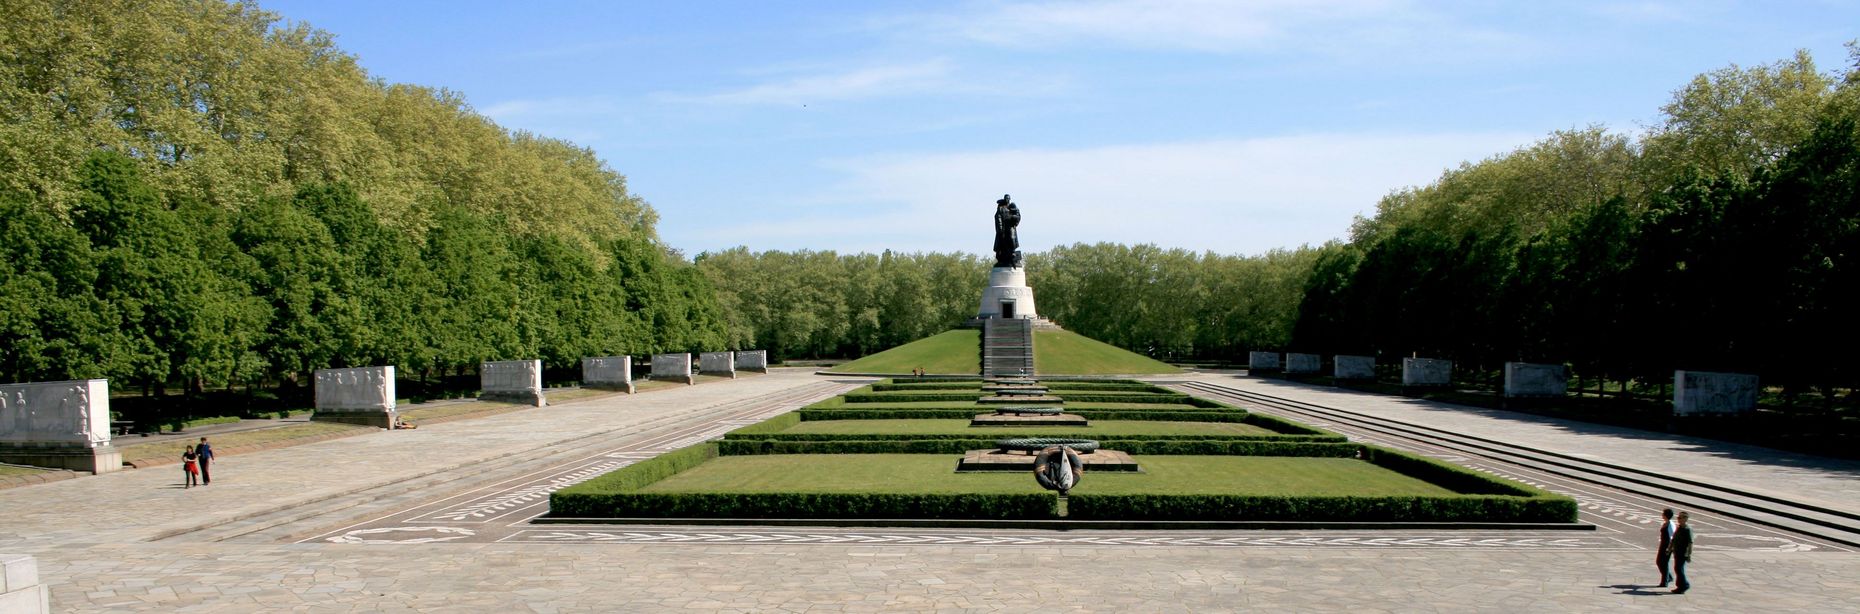 Auf dem Foto ist das große Monument des Sowjetischen Ehrenmals Treptow von weitem zu sehen